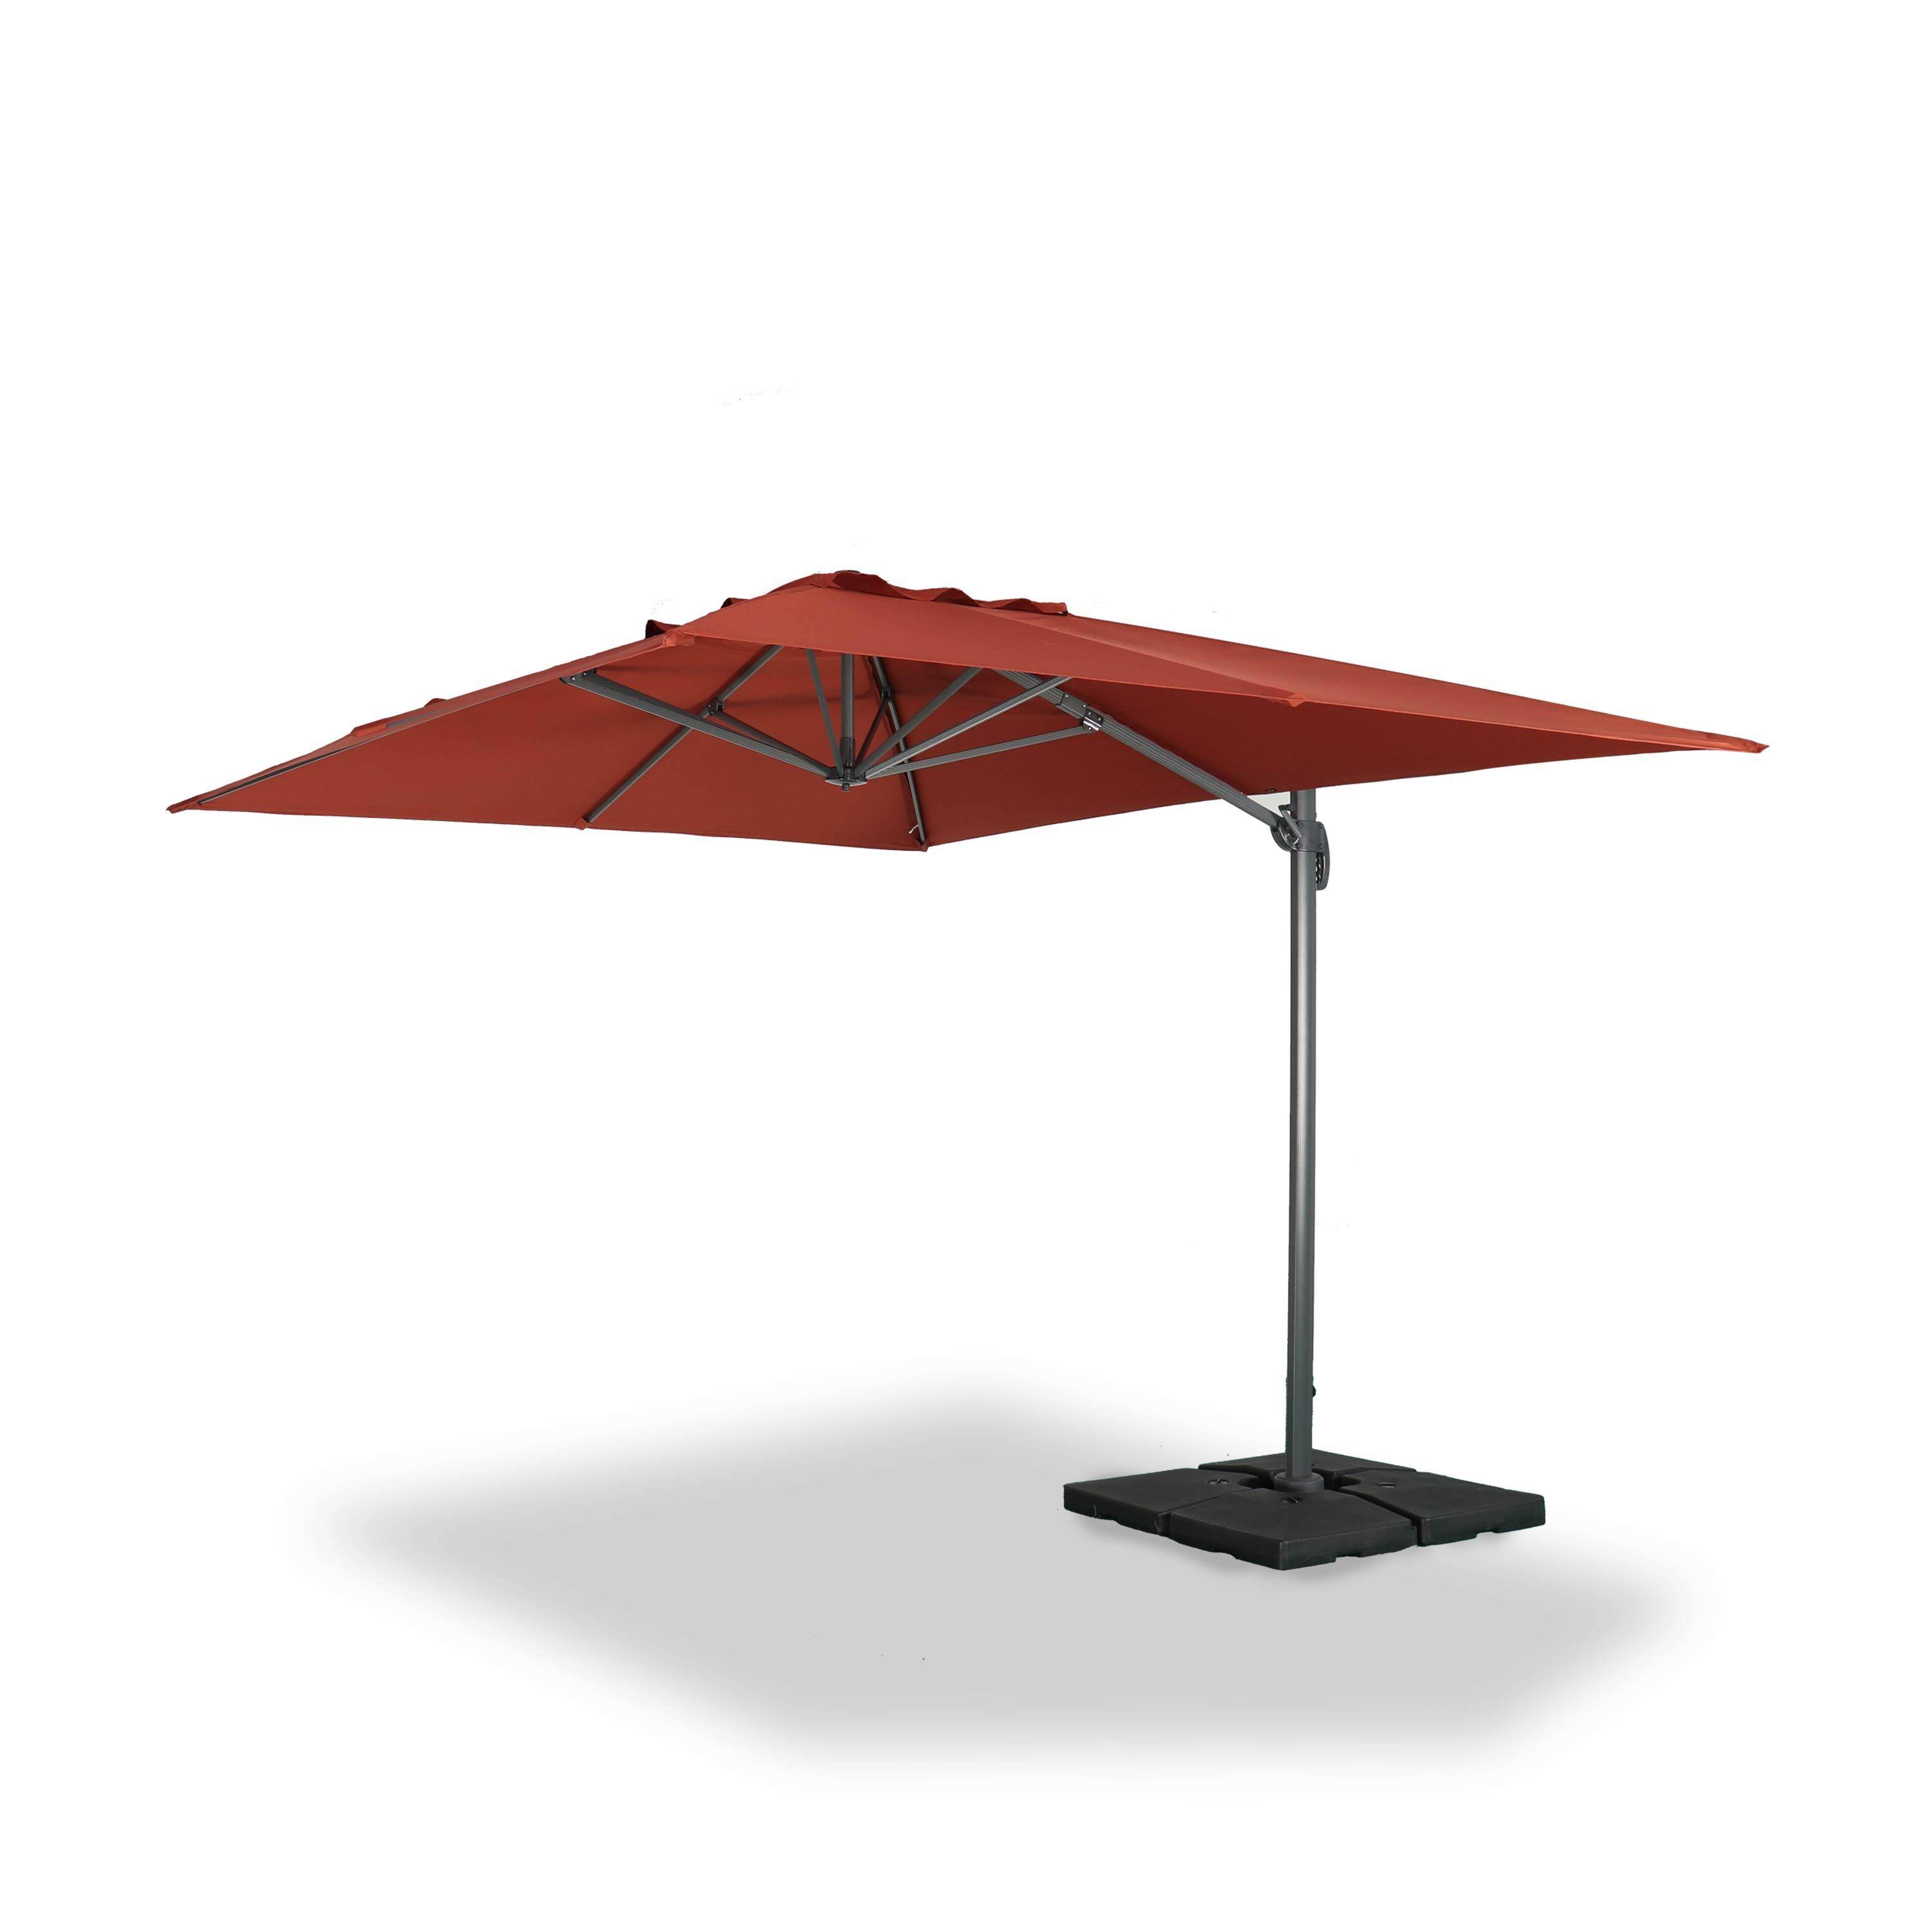 Rectangular cantilever parasol, 3x4m - Saint Jean de Luz - Terracotta Photo1